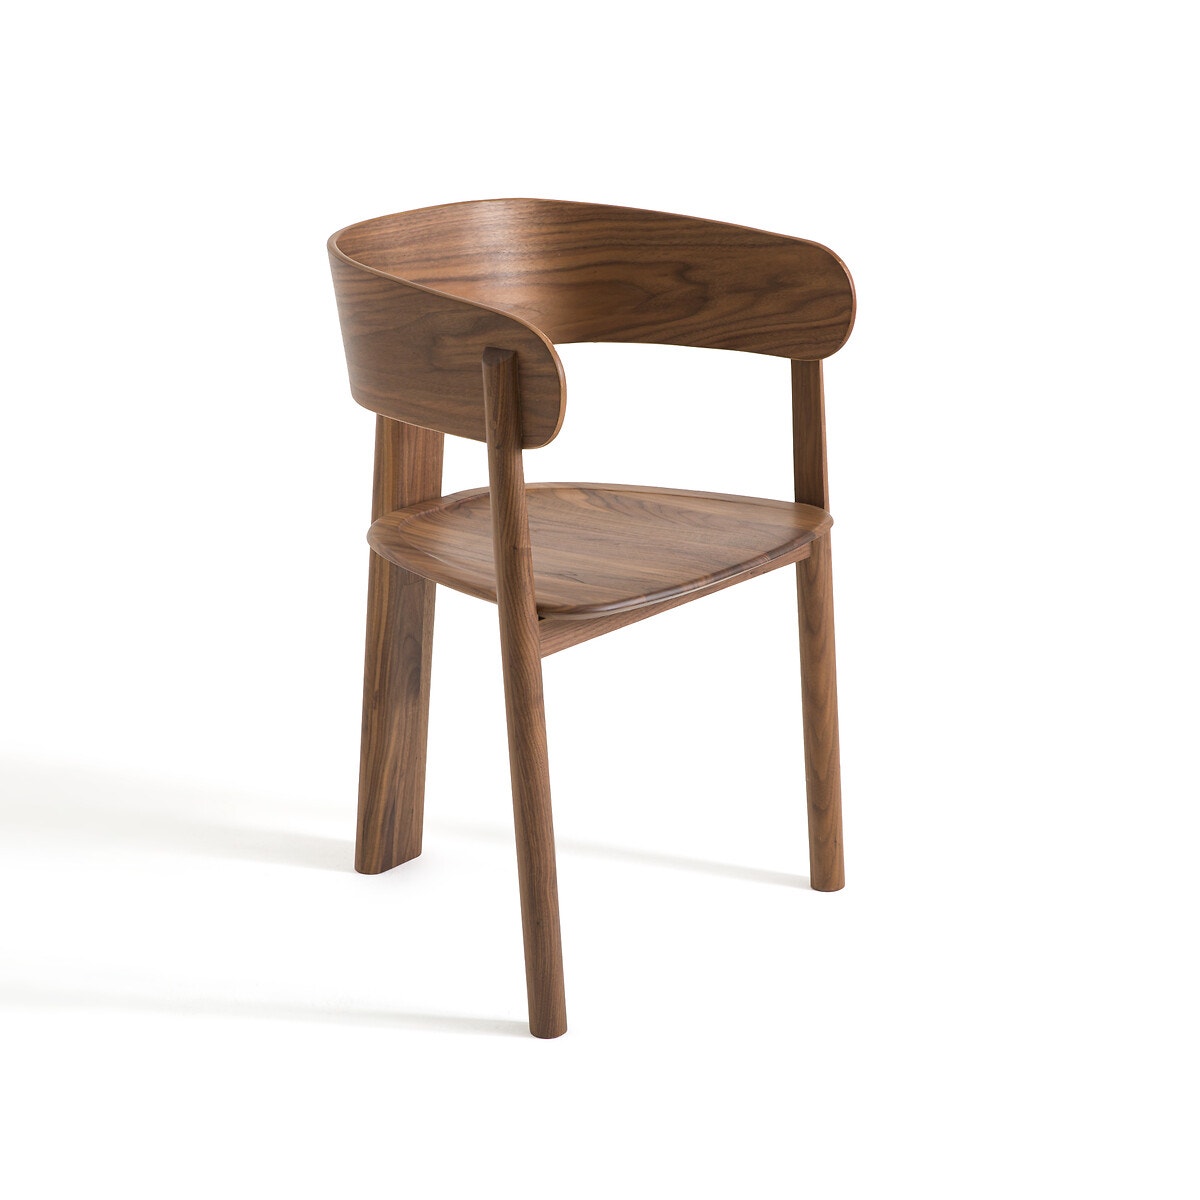 Πολυθρόνα από ξύλο καρυδιάς Marais, σχεδίασης E. Gallina